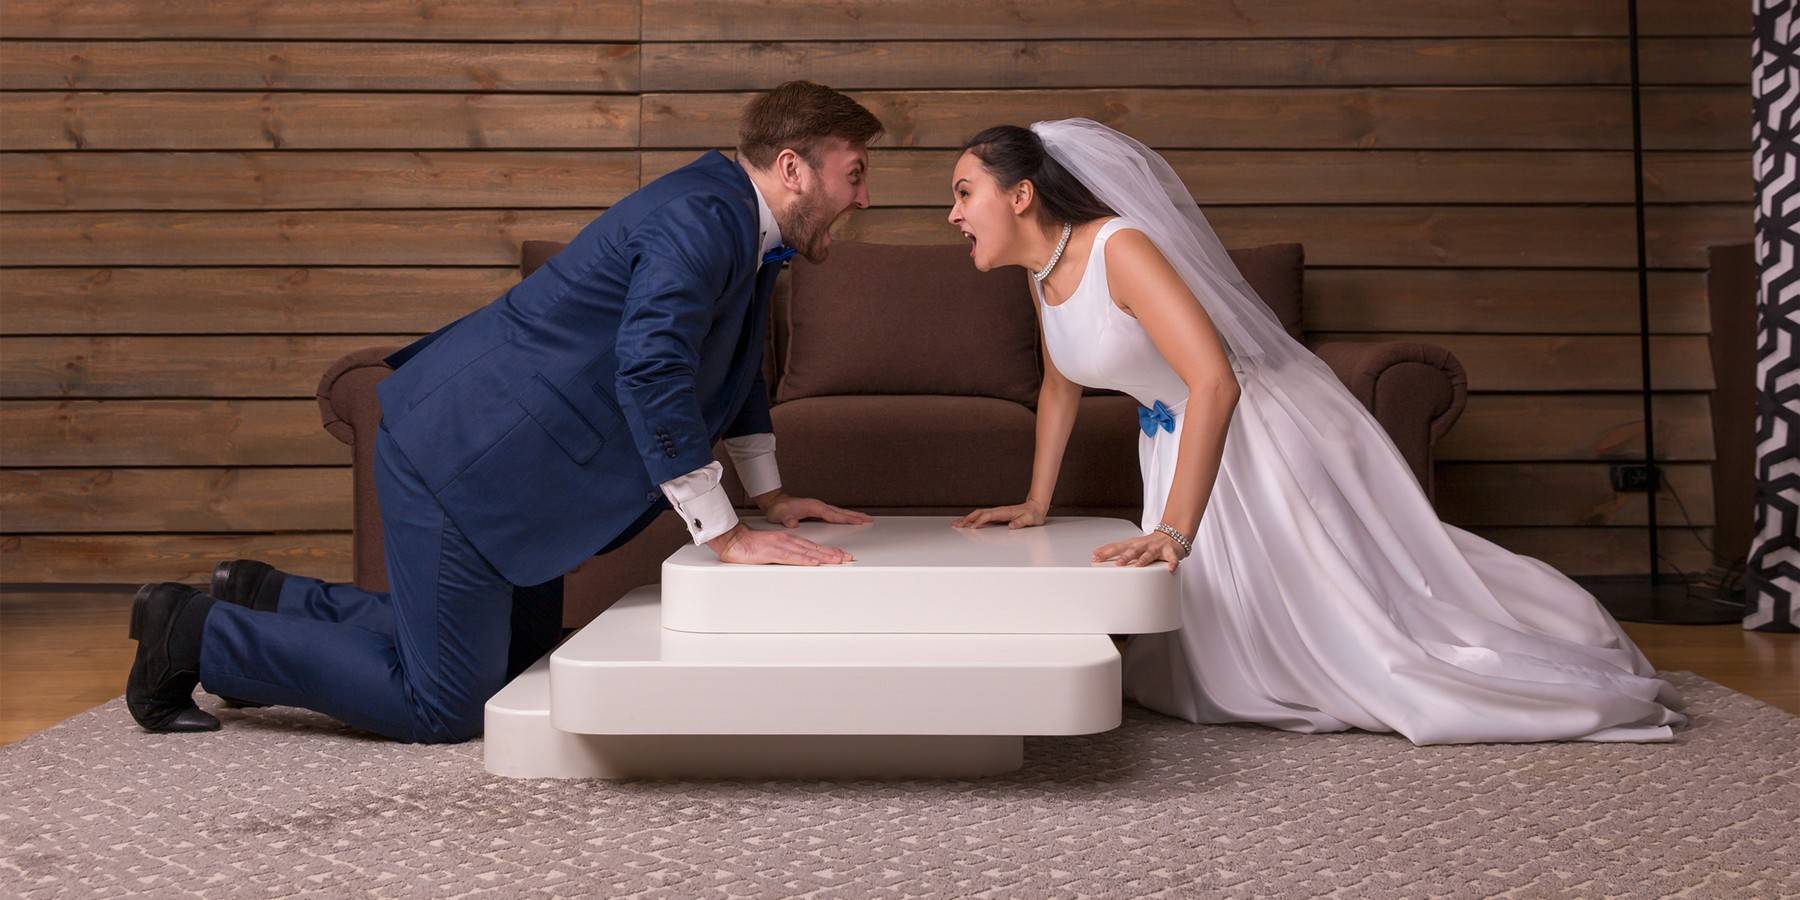 Бюджетная свадьба: как недорого и красиво организовать свадьбу в 2020 году?